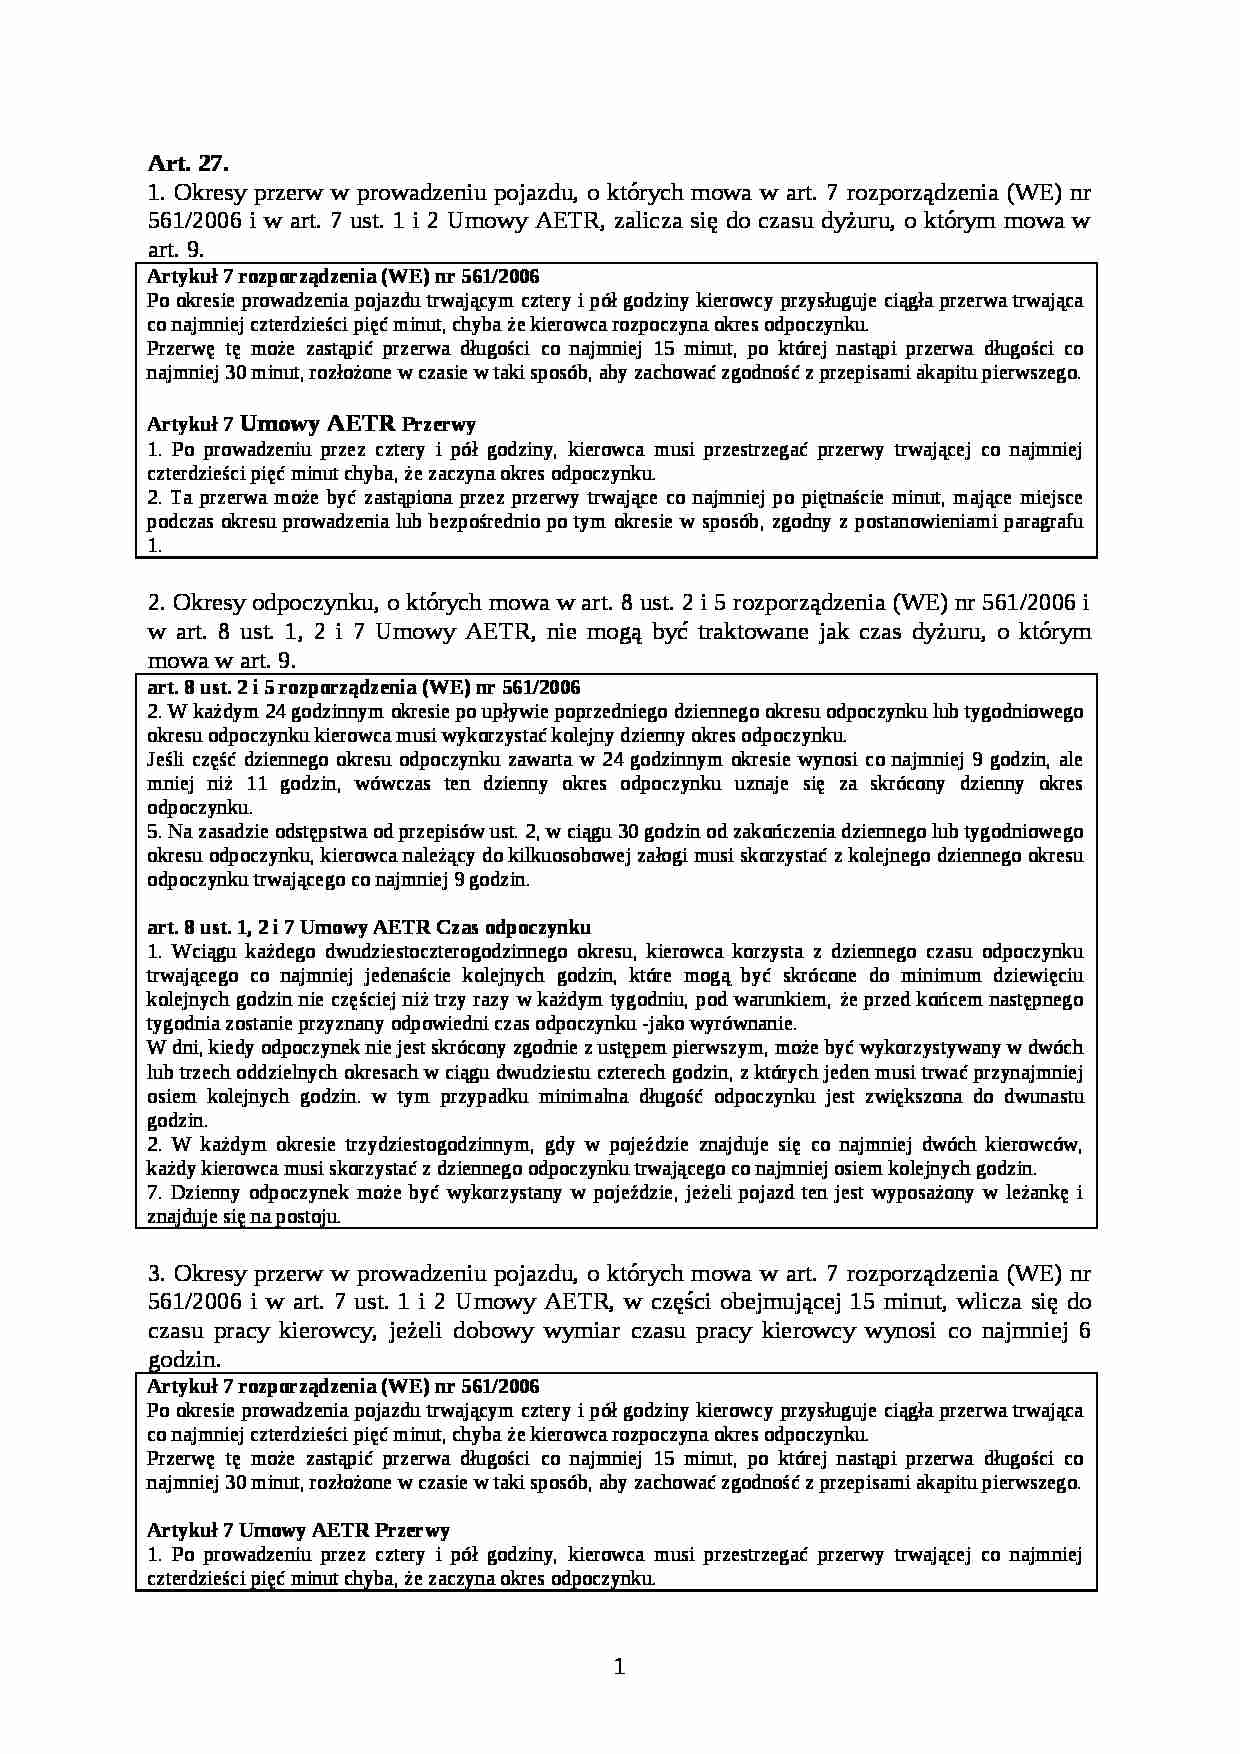 Art. 27. okresy przerw w prowadzeniu pojazdu - strona 1